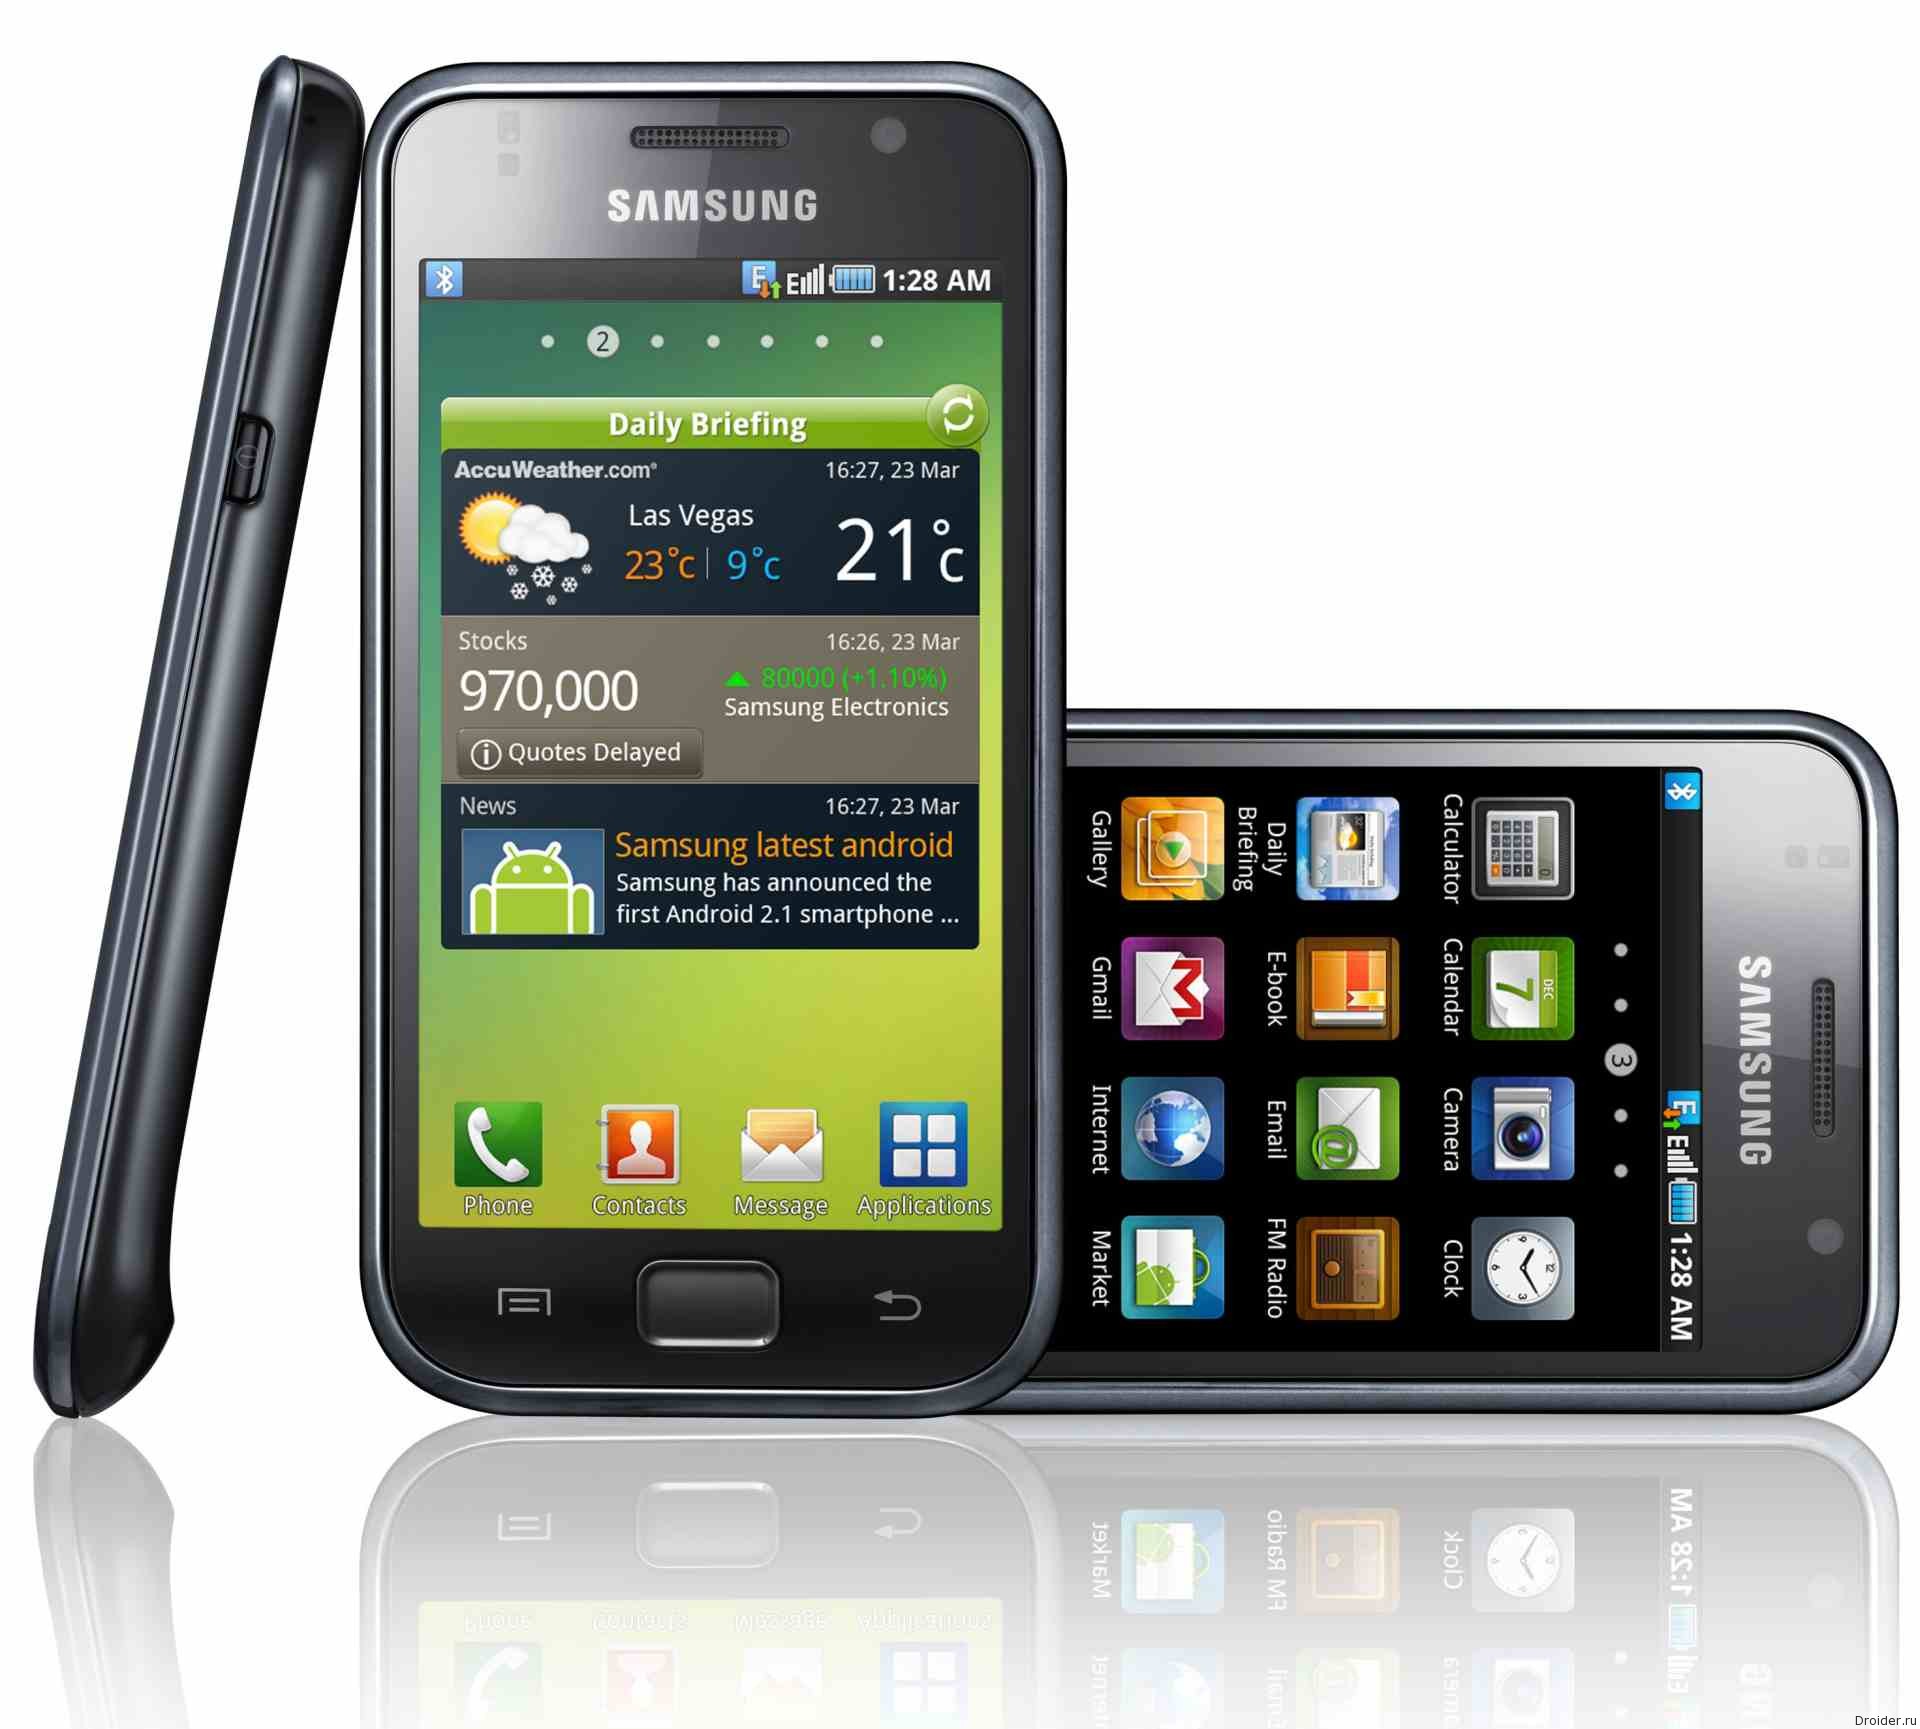 Samsung Galaxy i9000